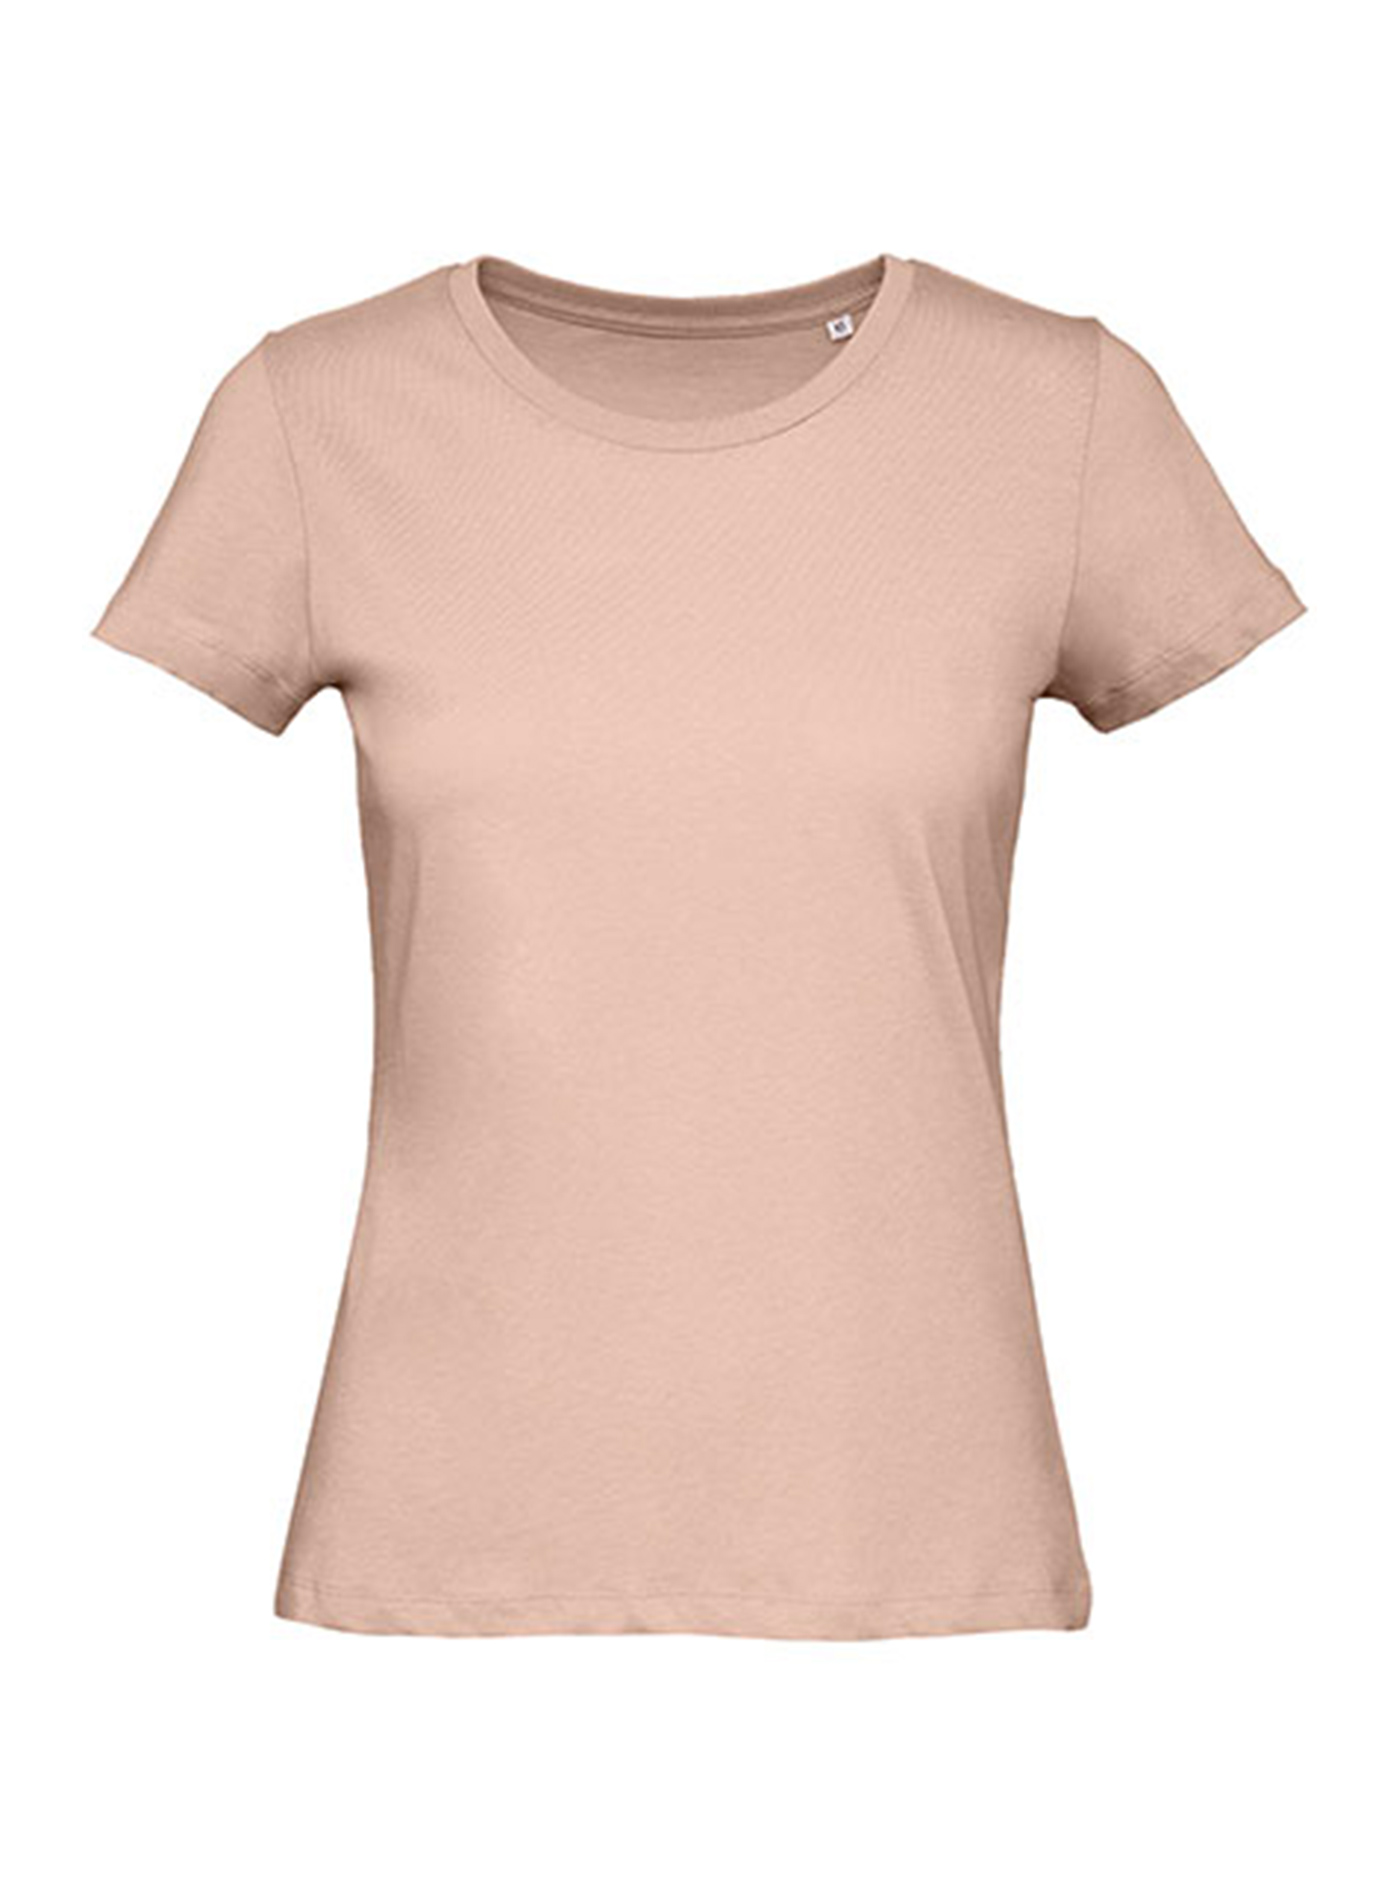 Dámské tričko B&C Collection Inspire - Bledě růžová L